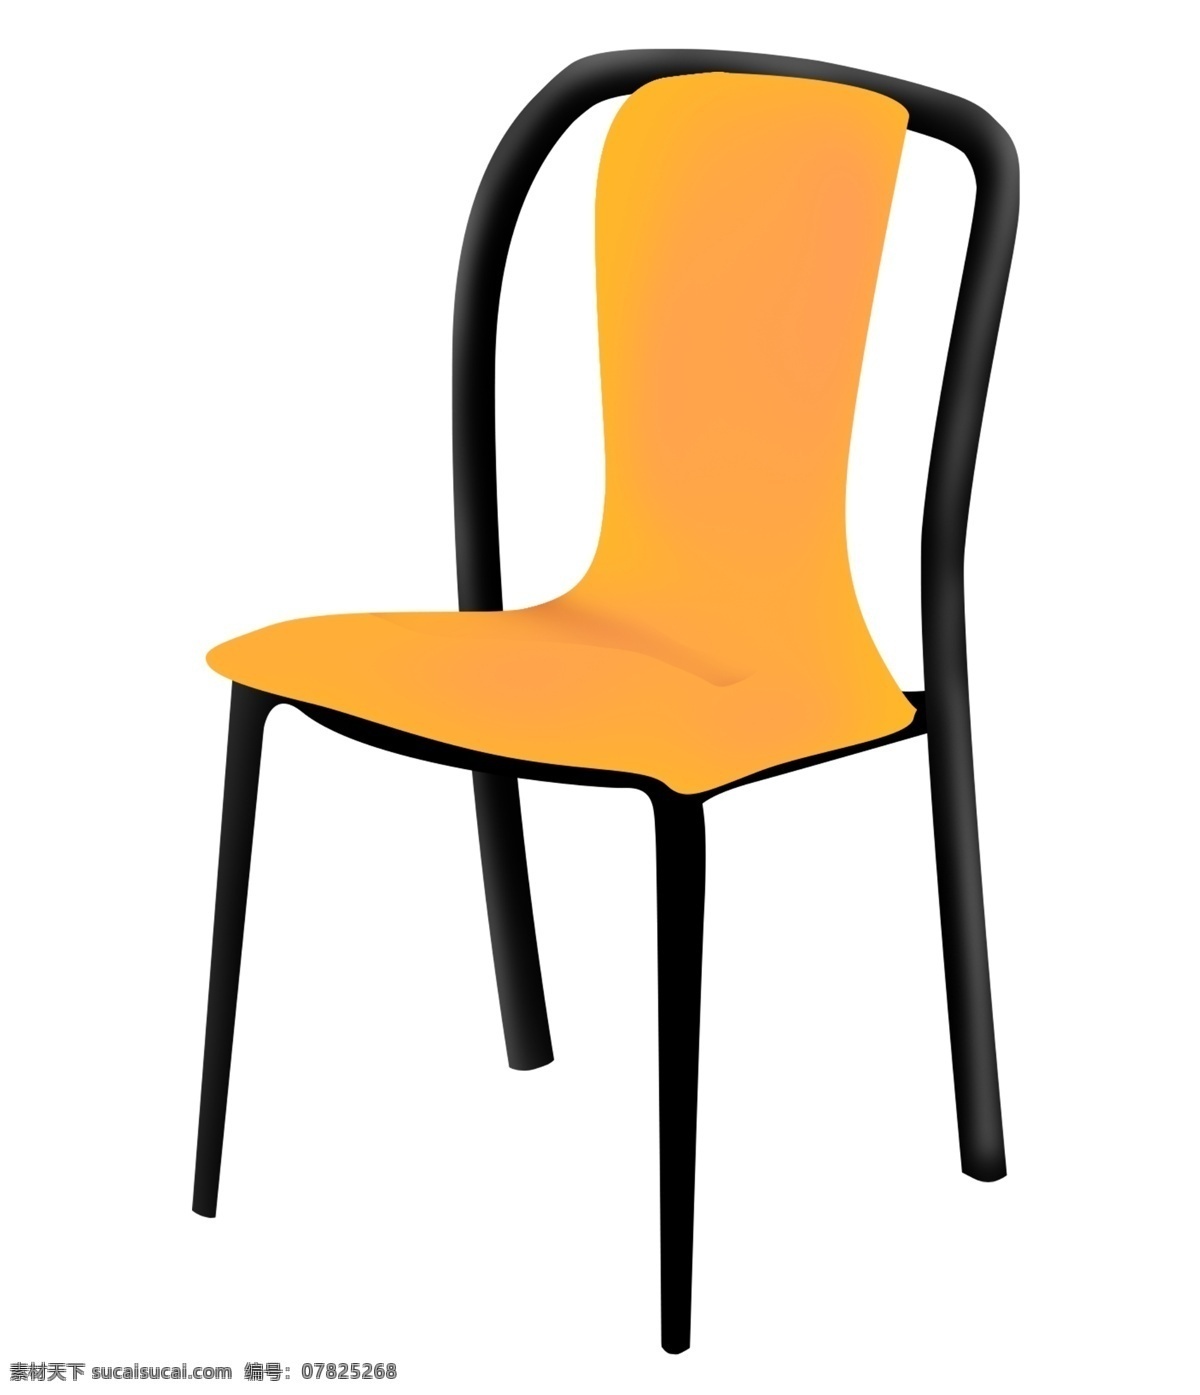 橘 色 椅子 家具 插画 橘色的椅子 卡通插画 椅子插画 家具插画 家具椅子 凳子座位 好看的椅子